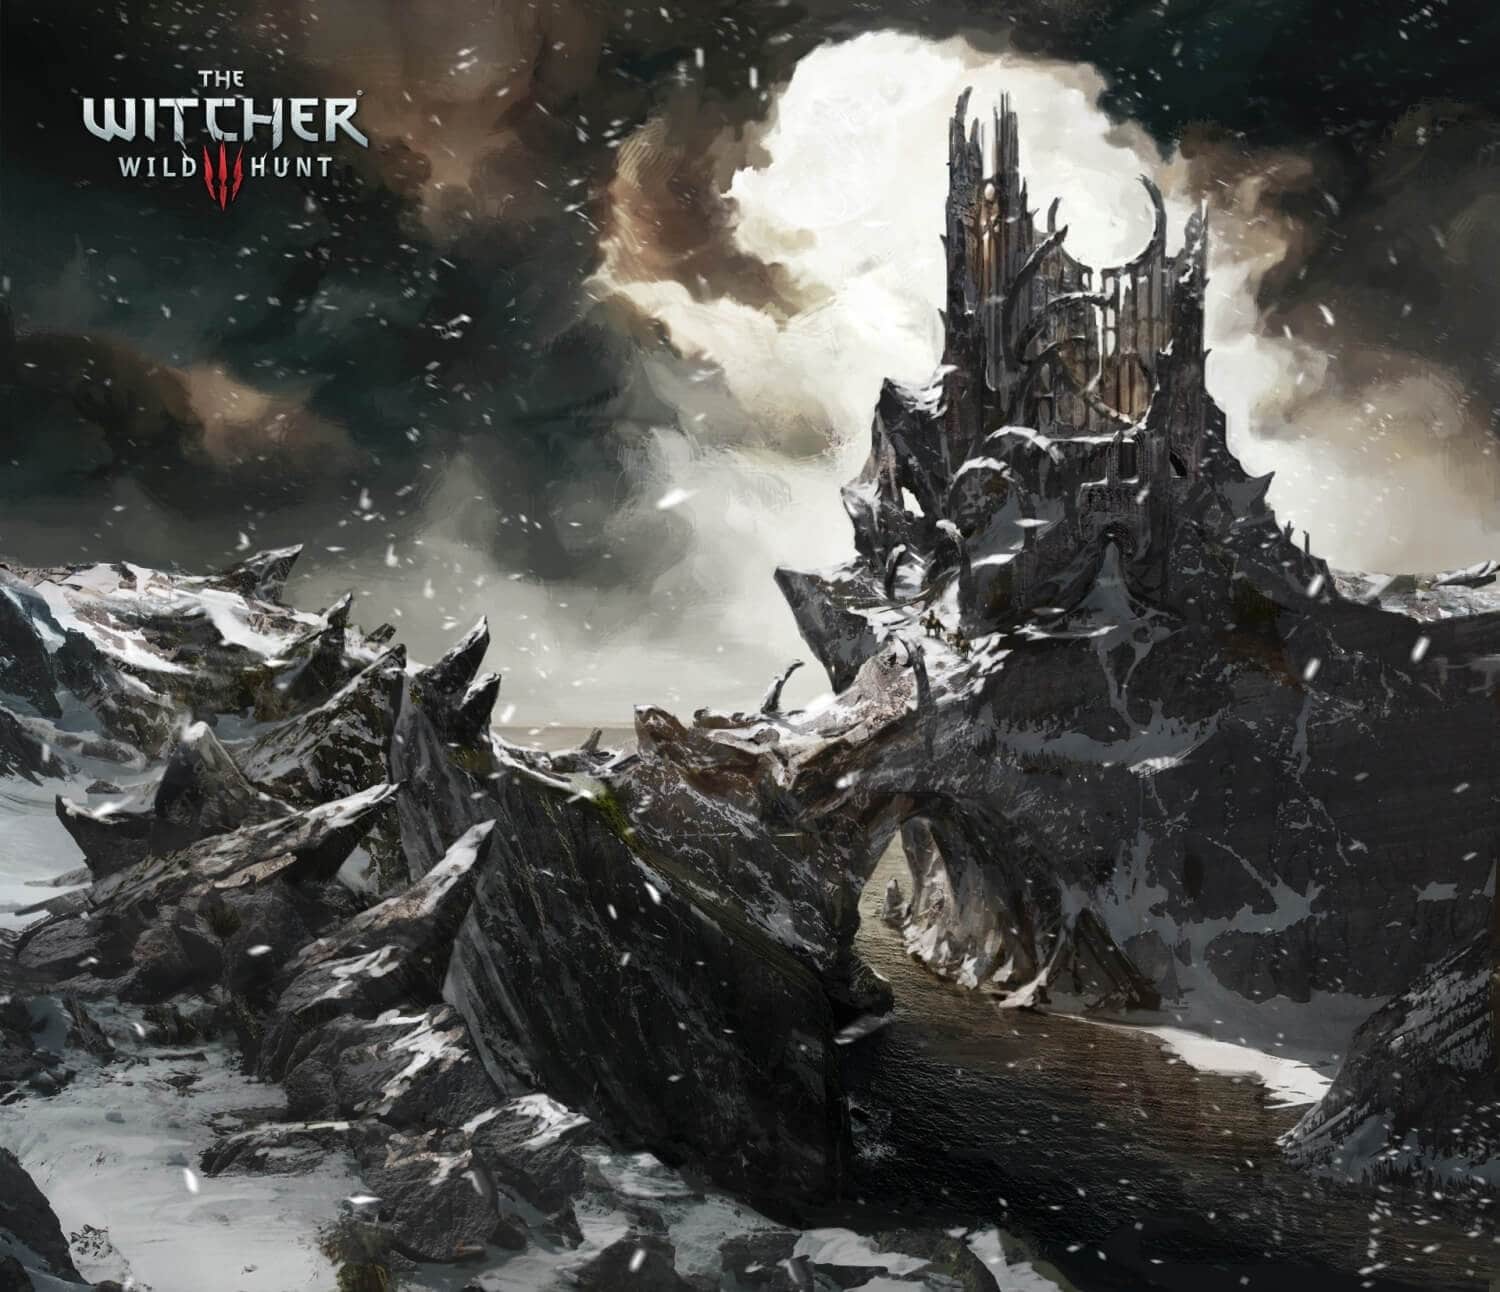 Witcher 3 Wild Hunt Environment Artwork